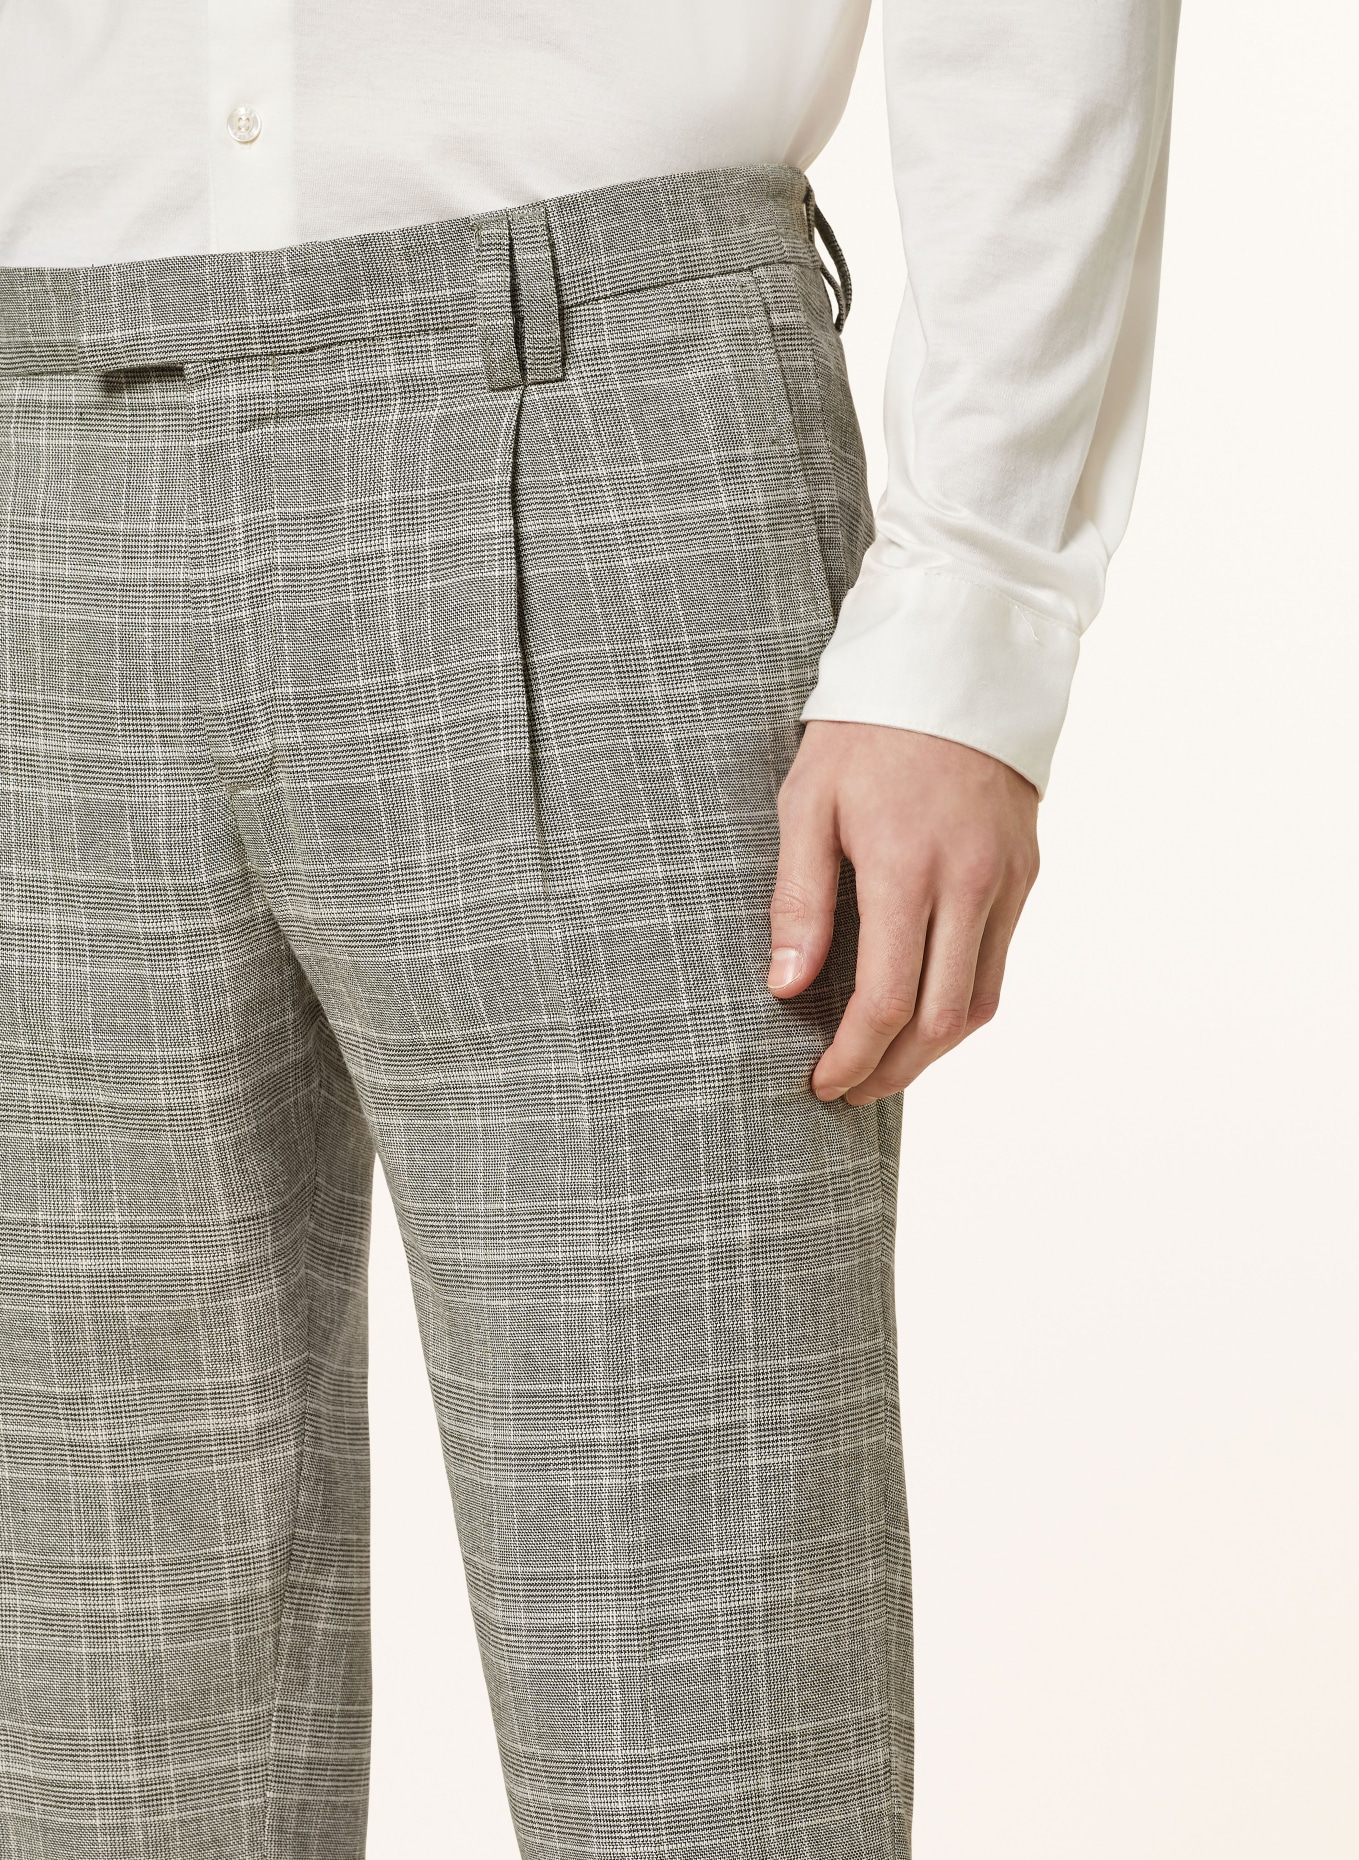 CINQUE Anzughose CISANDO Relaxed Fit, Farbe: 82 hellgrUEn (Bild 6)